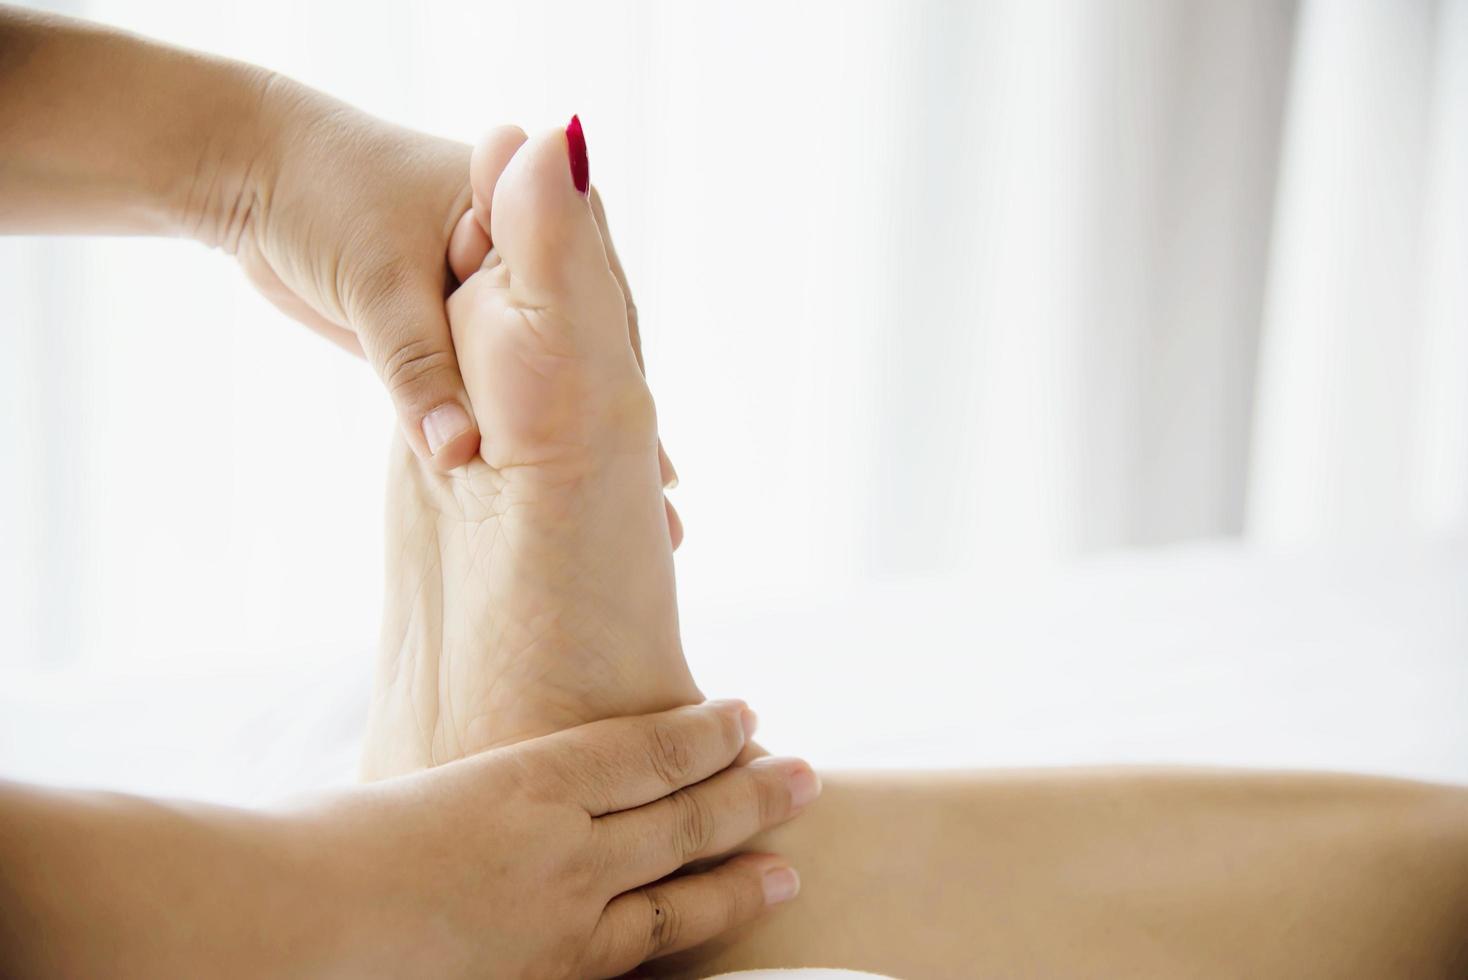 vrouw die voetmassage krijgt van masseuse close-up bij hand en voet - ontspan in voetmassage therapie dienstverleningsconcept foto